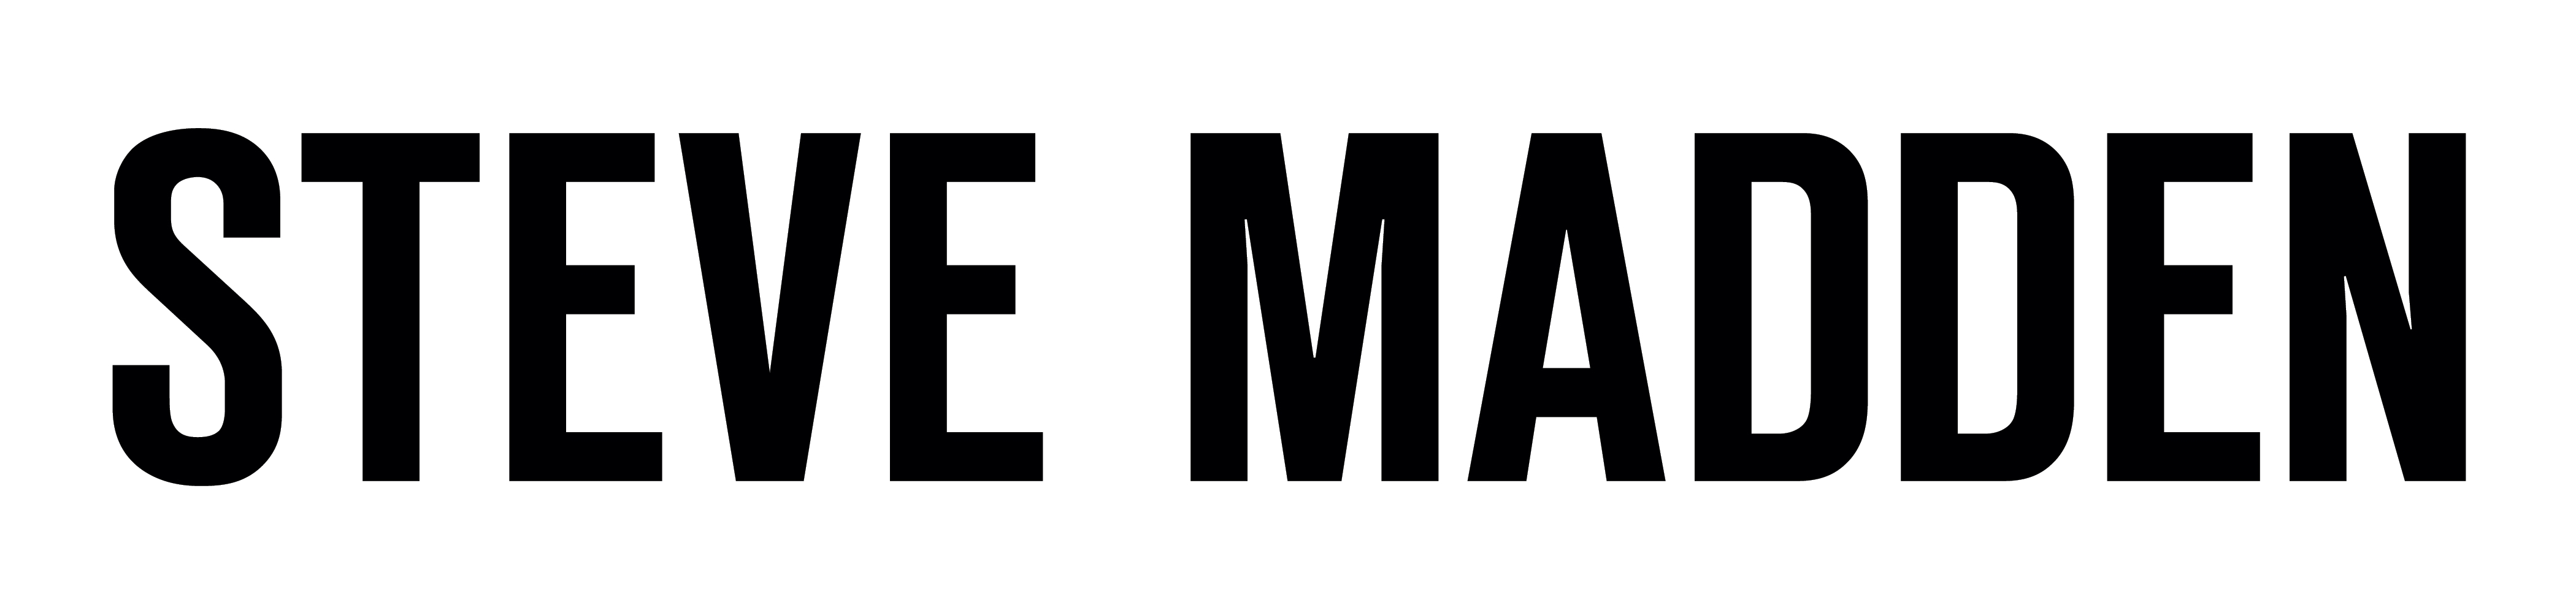 Steve Madden logo, white color